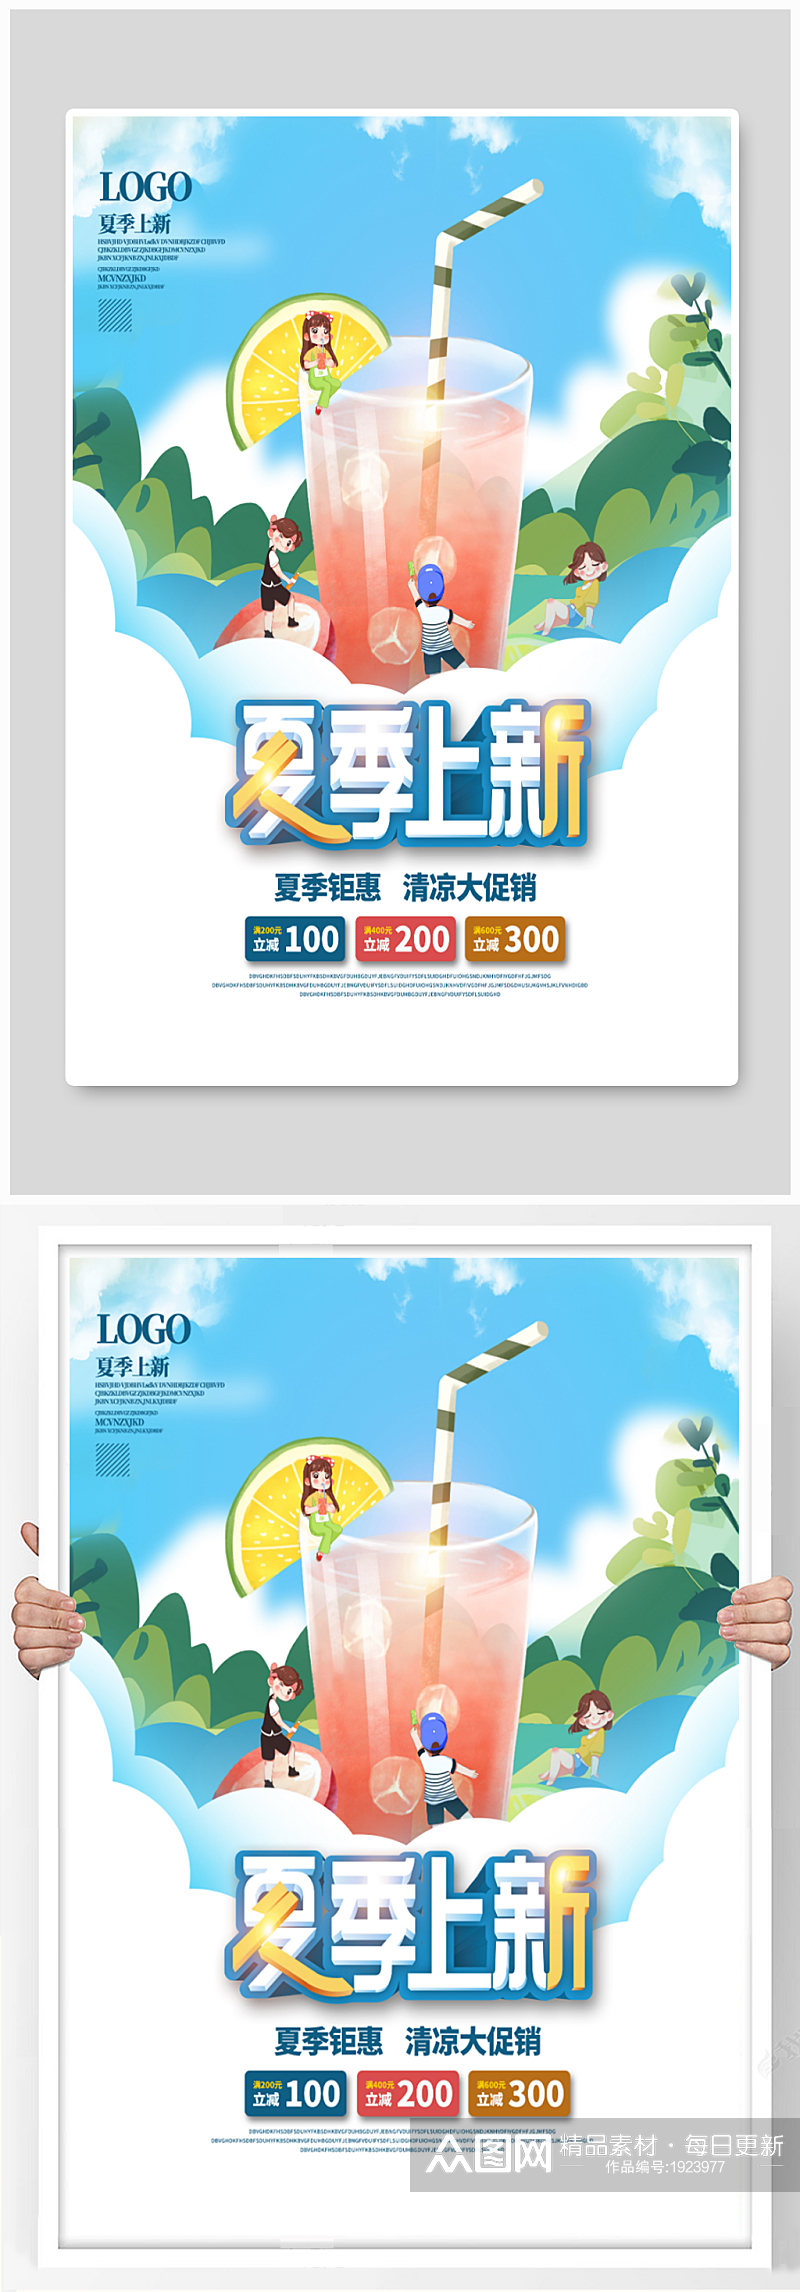 创意小人国世界夏季上新饮料宣传海报设计素材